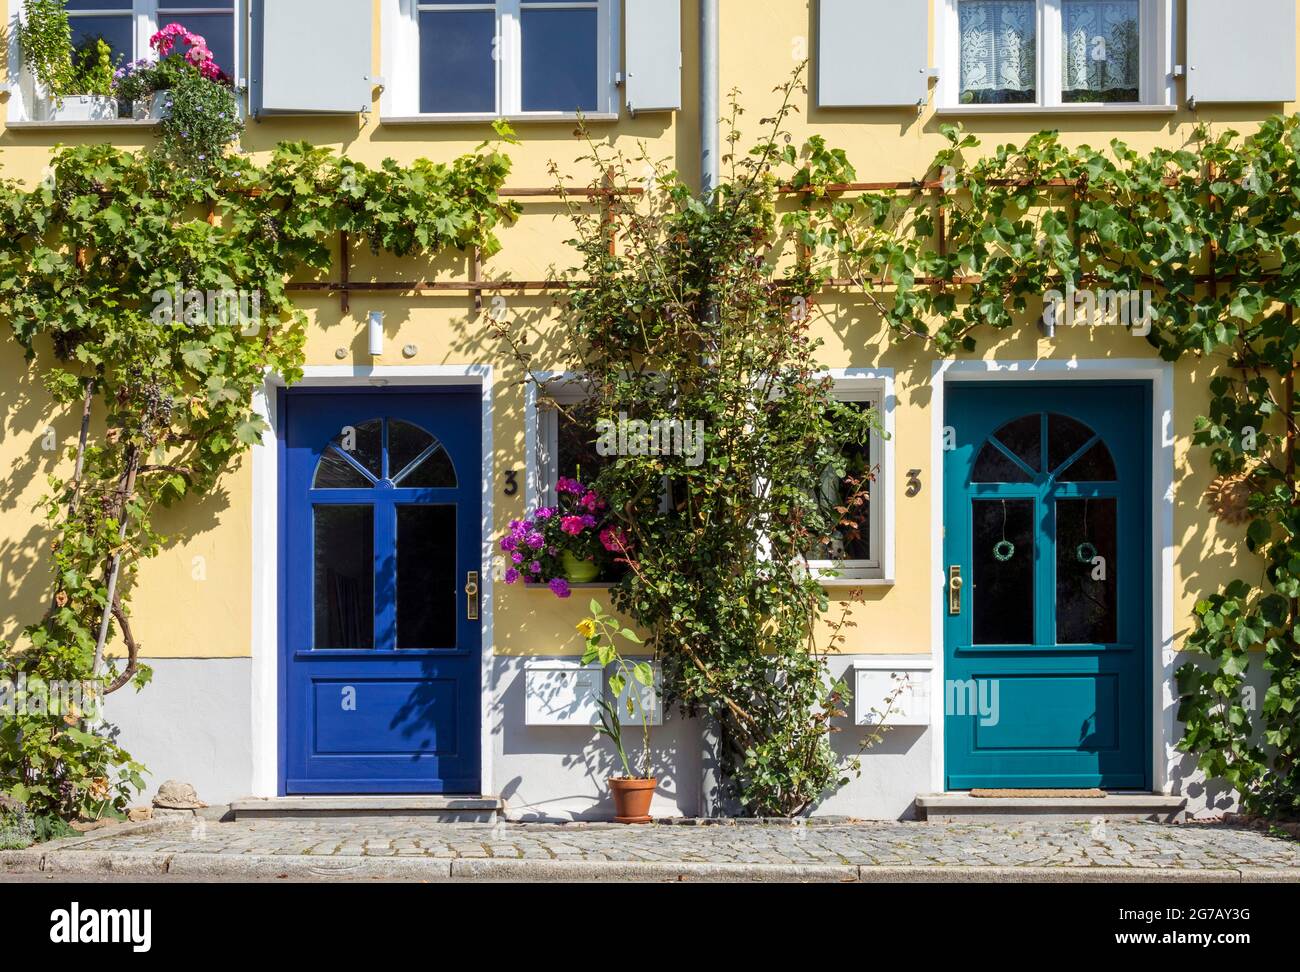 Alemania, Baden-Württemberg, Tübingen, casa adosada, puerta delantera azul y verde, vid Foto de stock